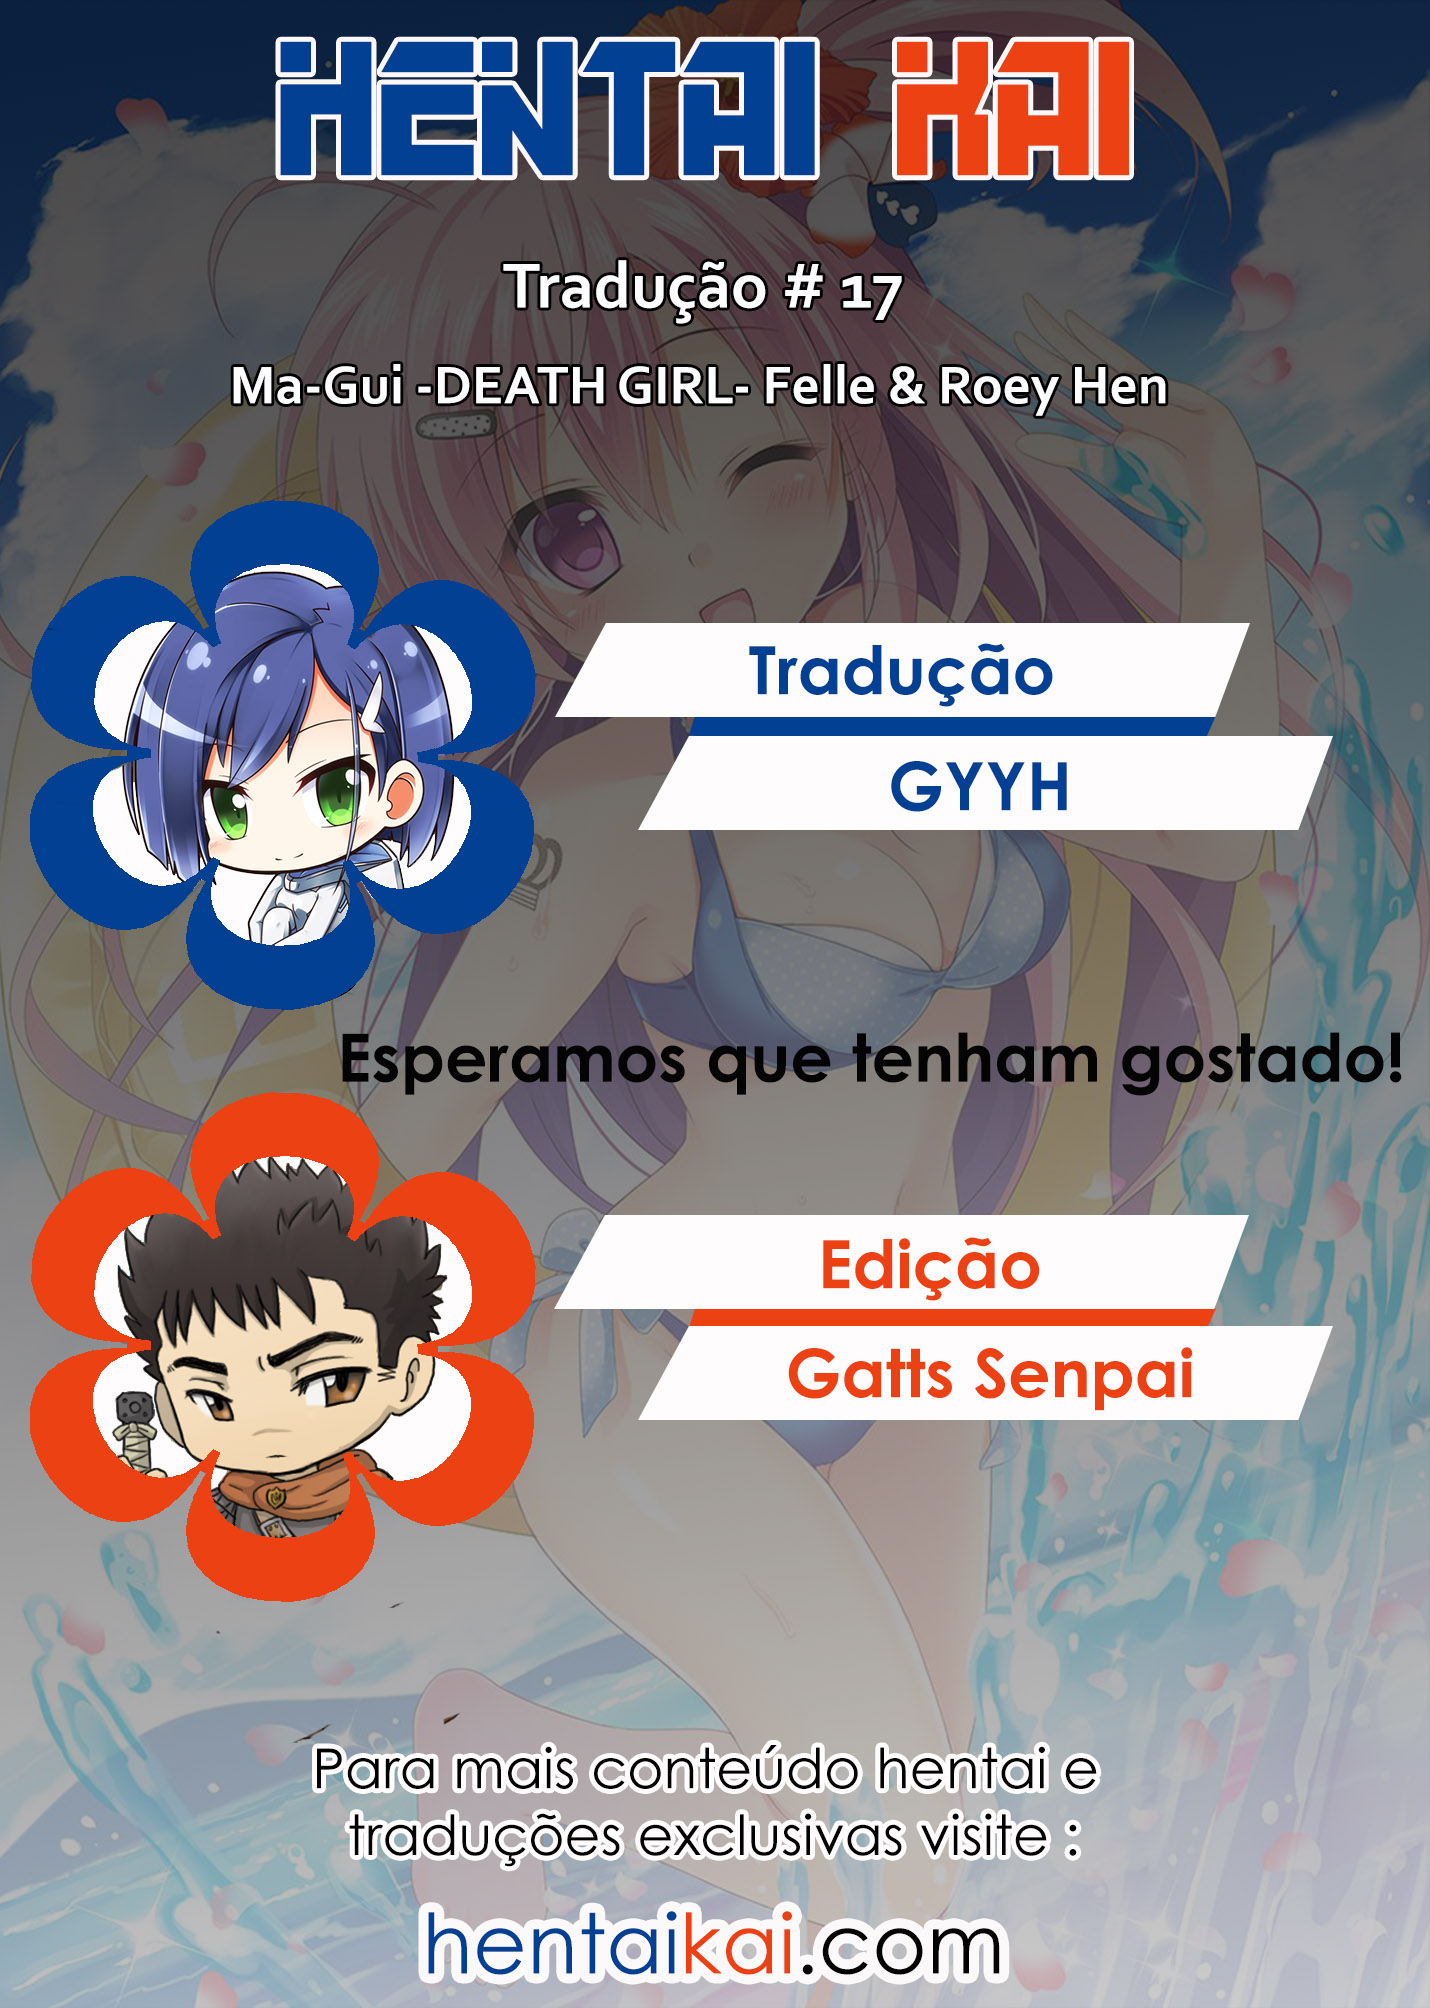 Ma-Gui -DEATH GIRL- Felle & Roey Hen